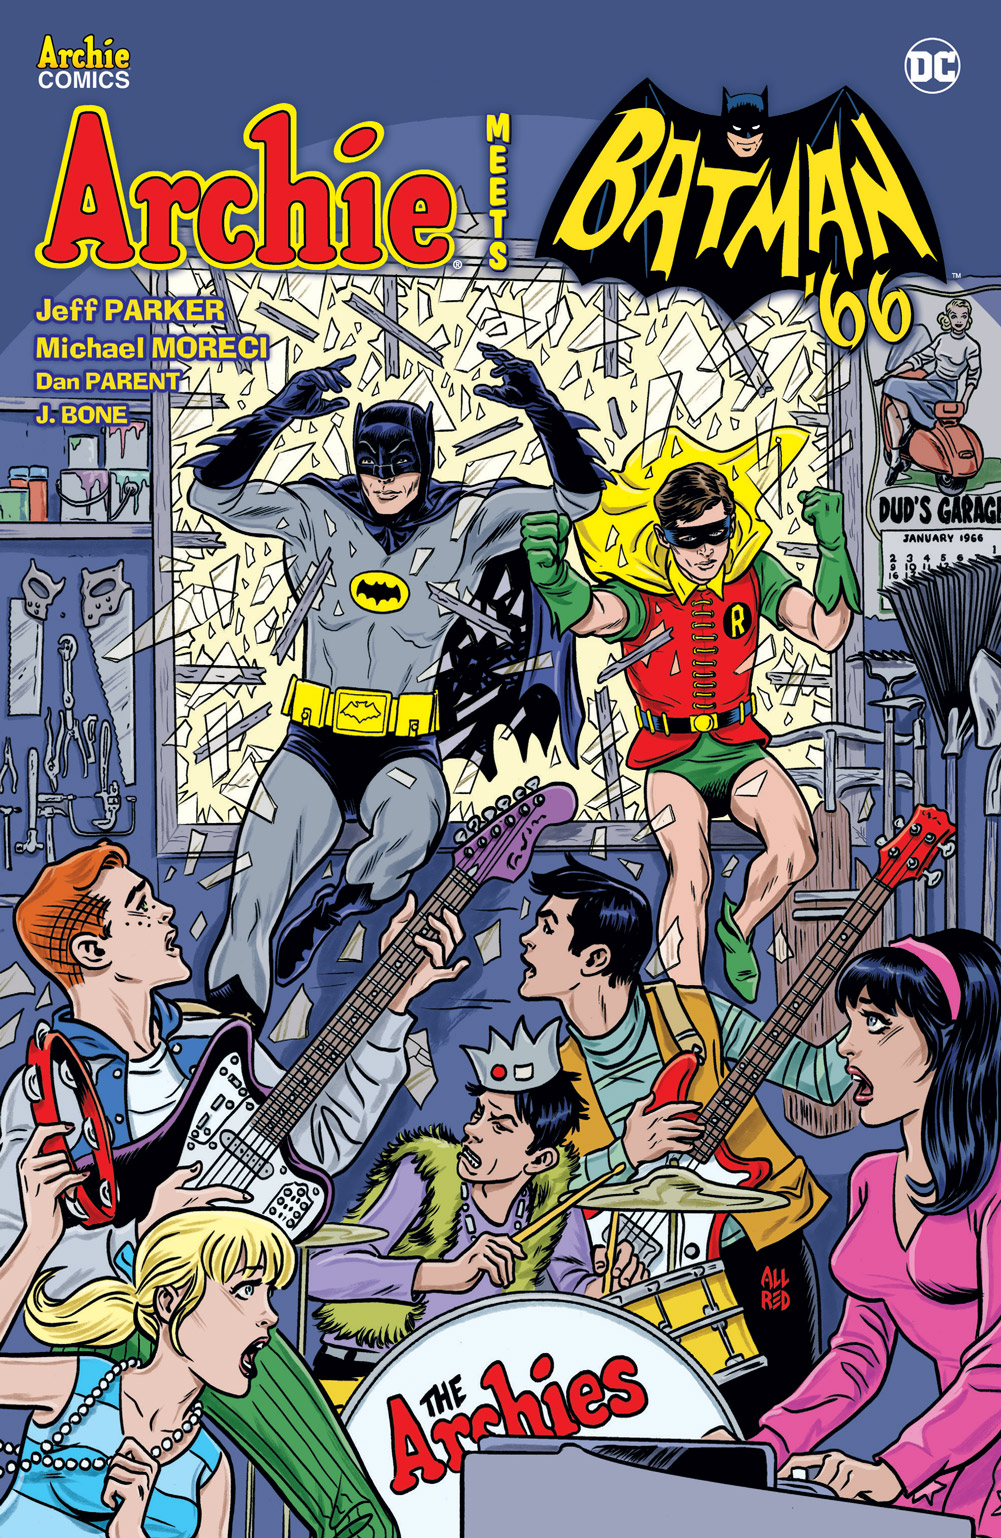 'Archie Meets Batman '66' TPB Review